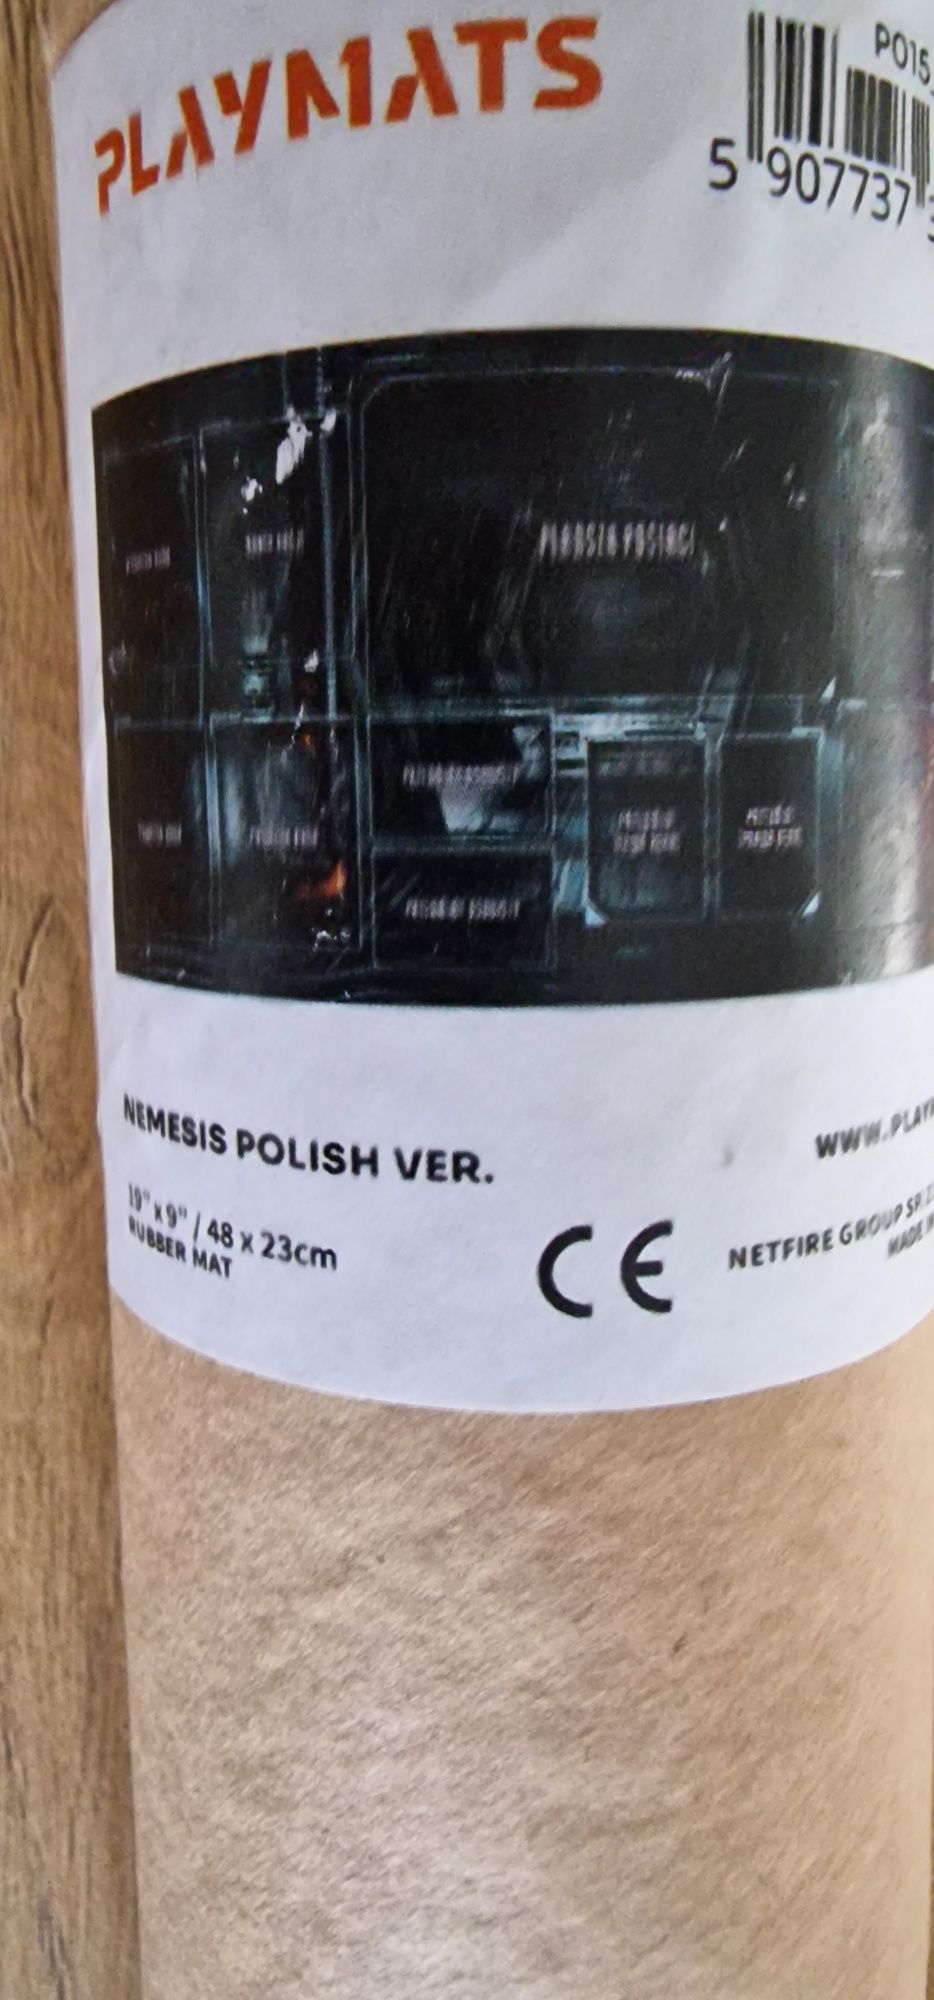 Nemesis - planszetka gracza - Język : Polski playmaty